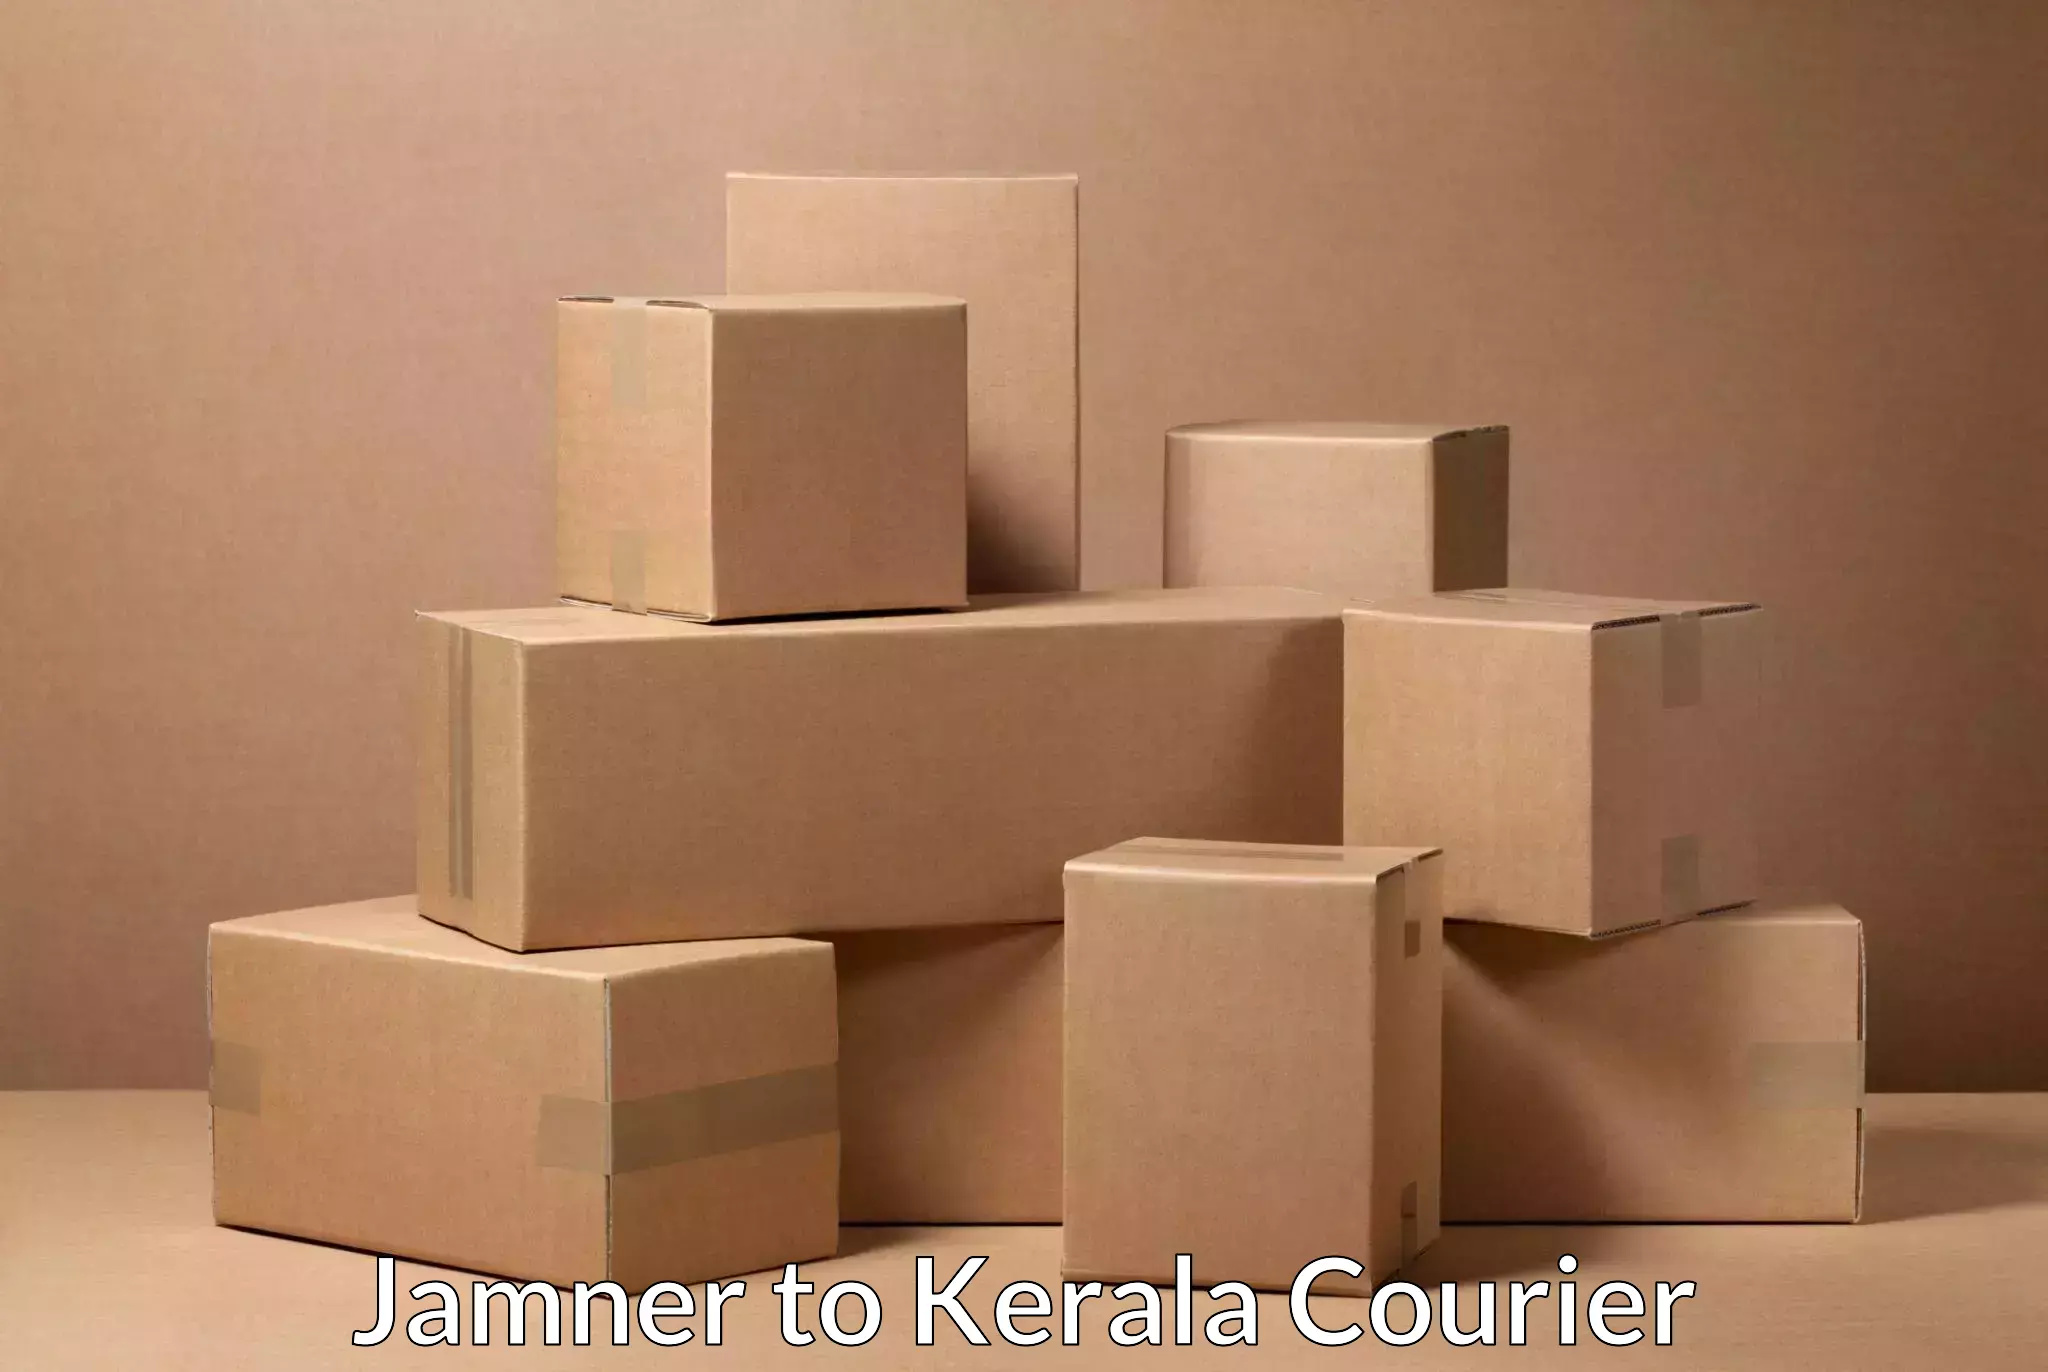 Multi-modal transportation Jamner to Cochin Port Kochi